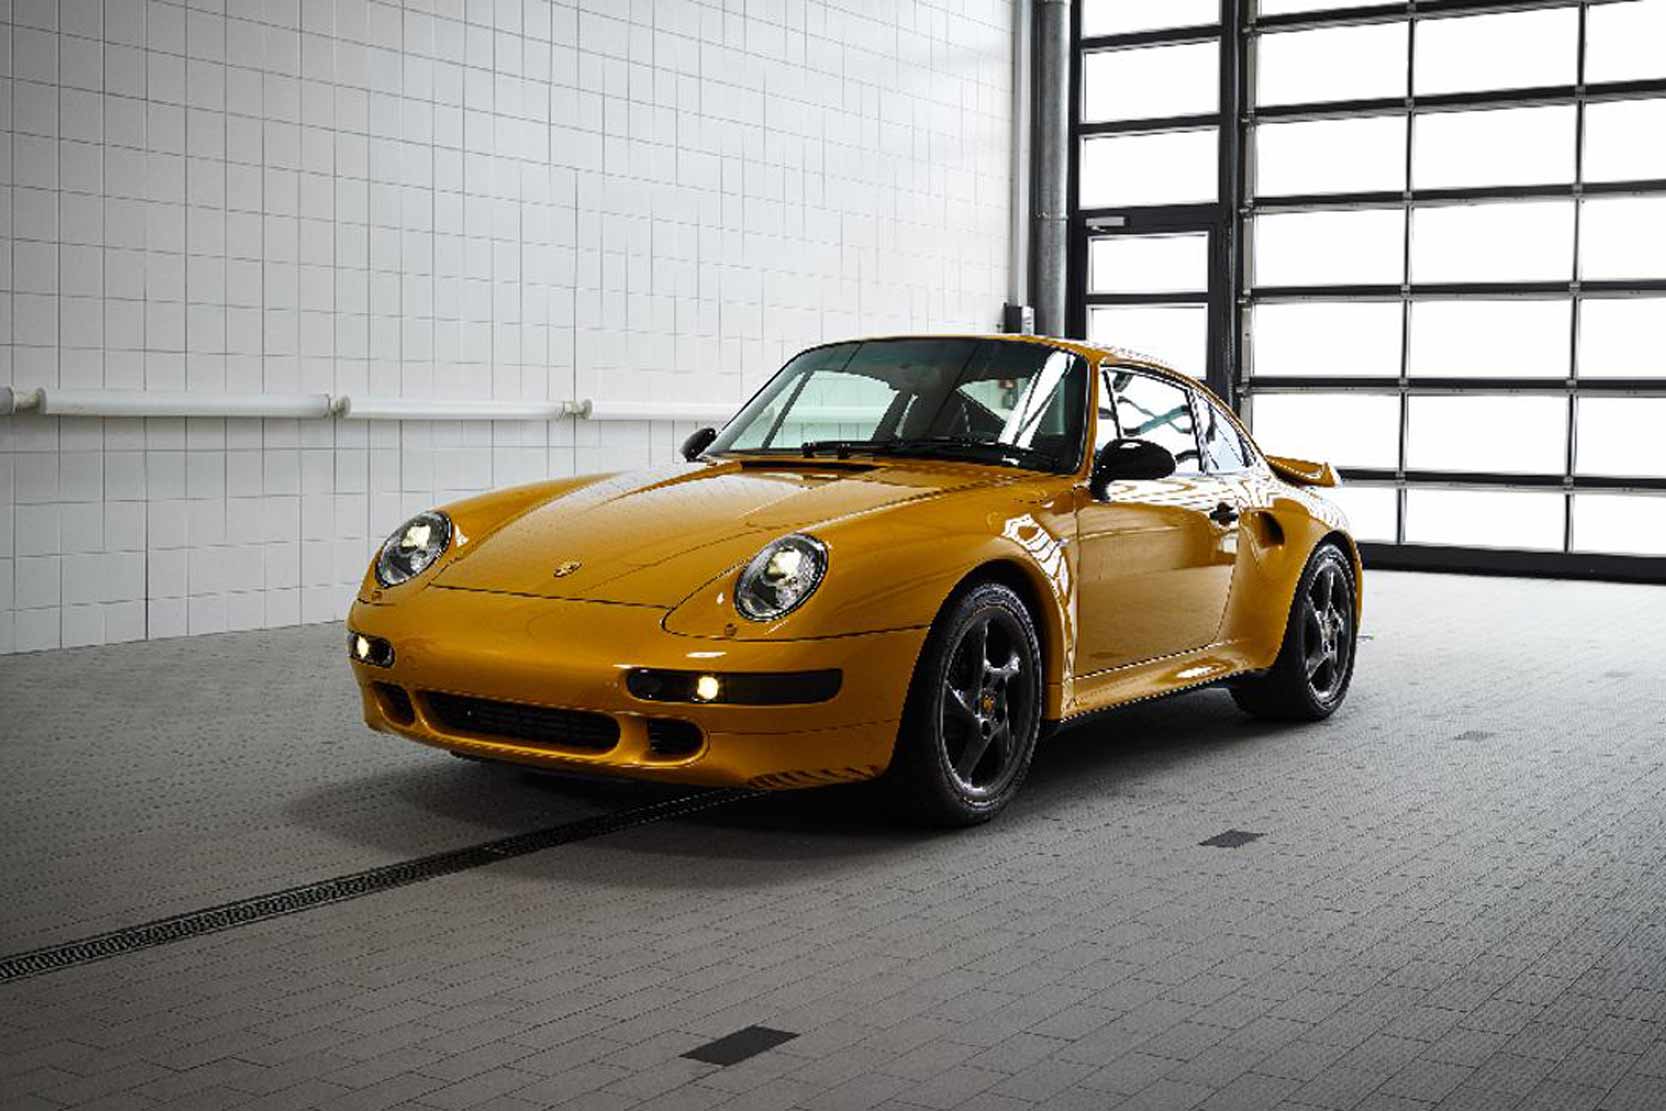 Image principale de l'actu: Porsche 911 project gold 2 7 millions d euros aux encheres 